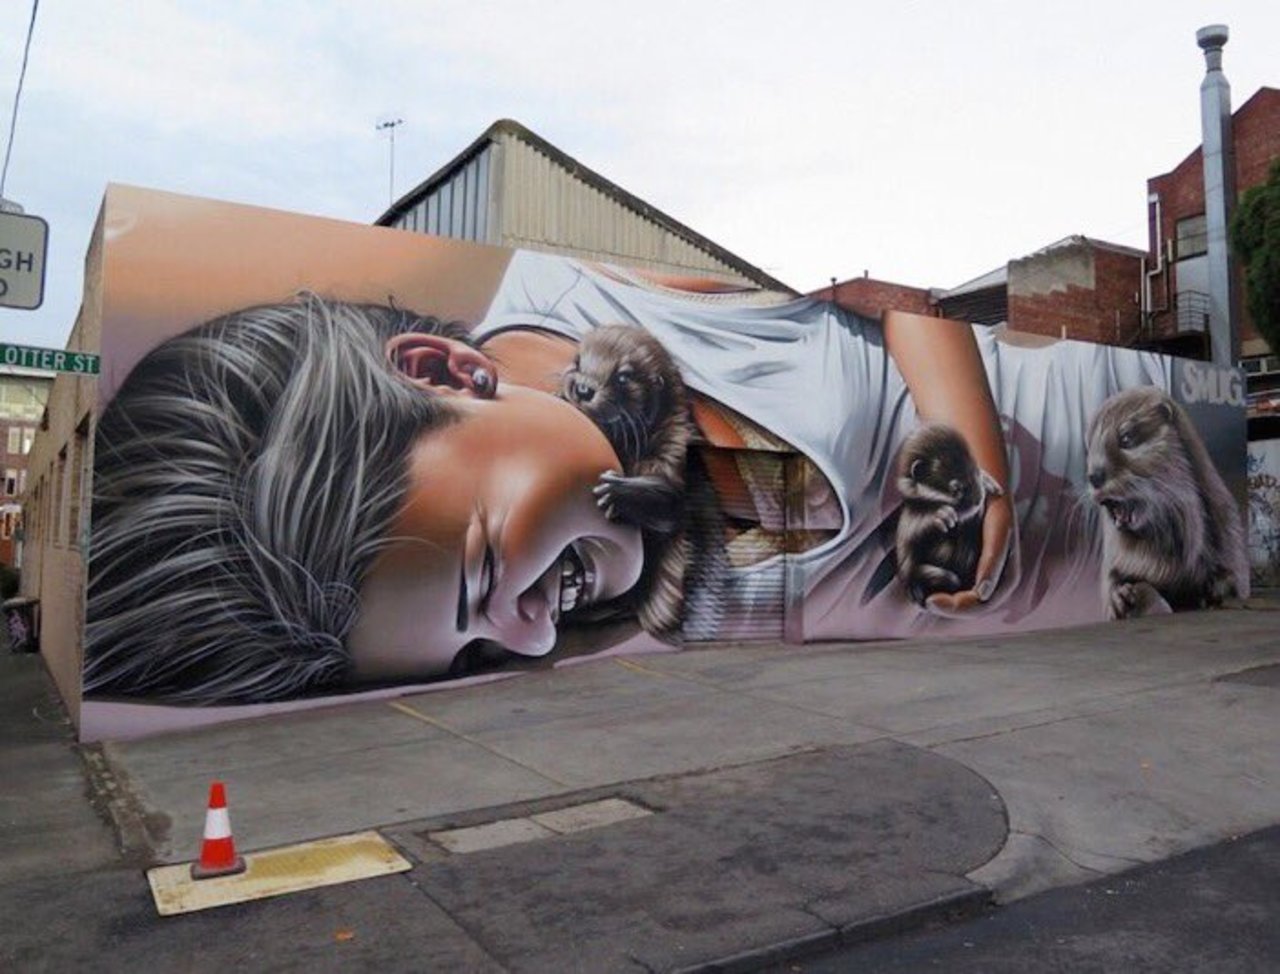 Mural by Smug #Melbourne #Australia #Streetart #urbanart #graffiti #art https://t.co/iaghAN2jTA